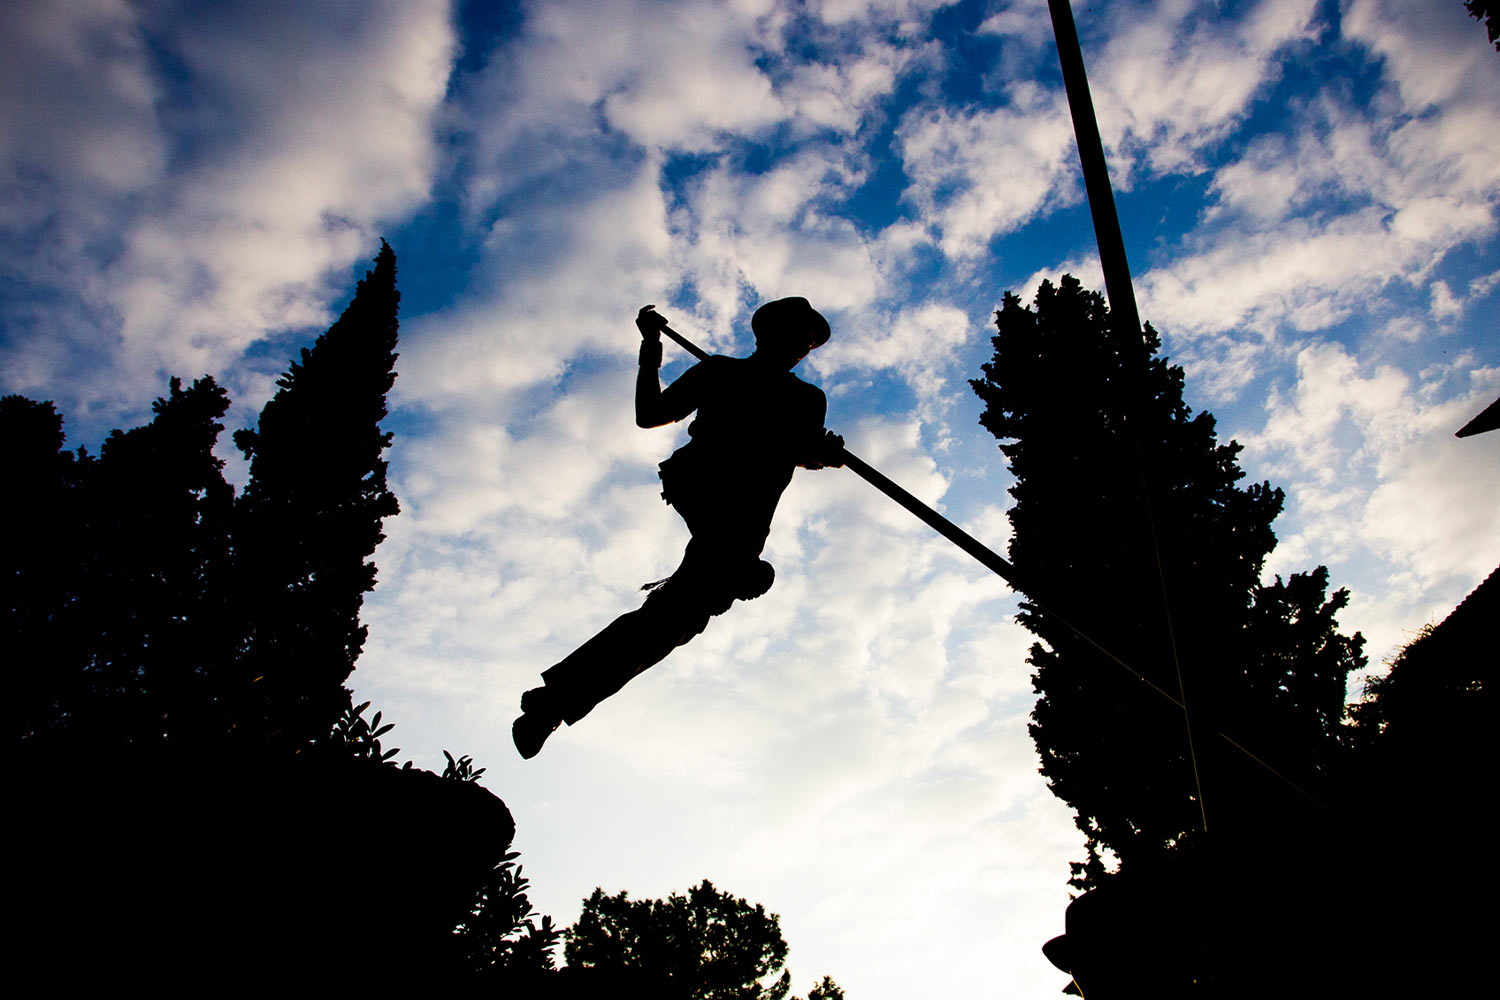 Il gioco spagnolo del Salto del pastor, tra i protagonisti del festival Tocatì di Verona ©Max Samaritani